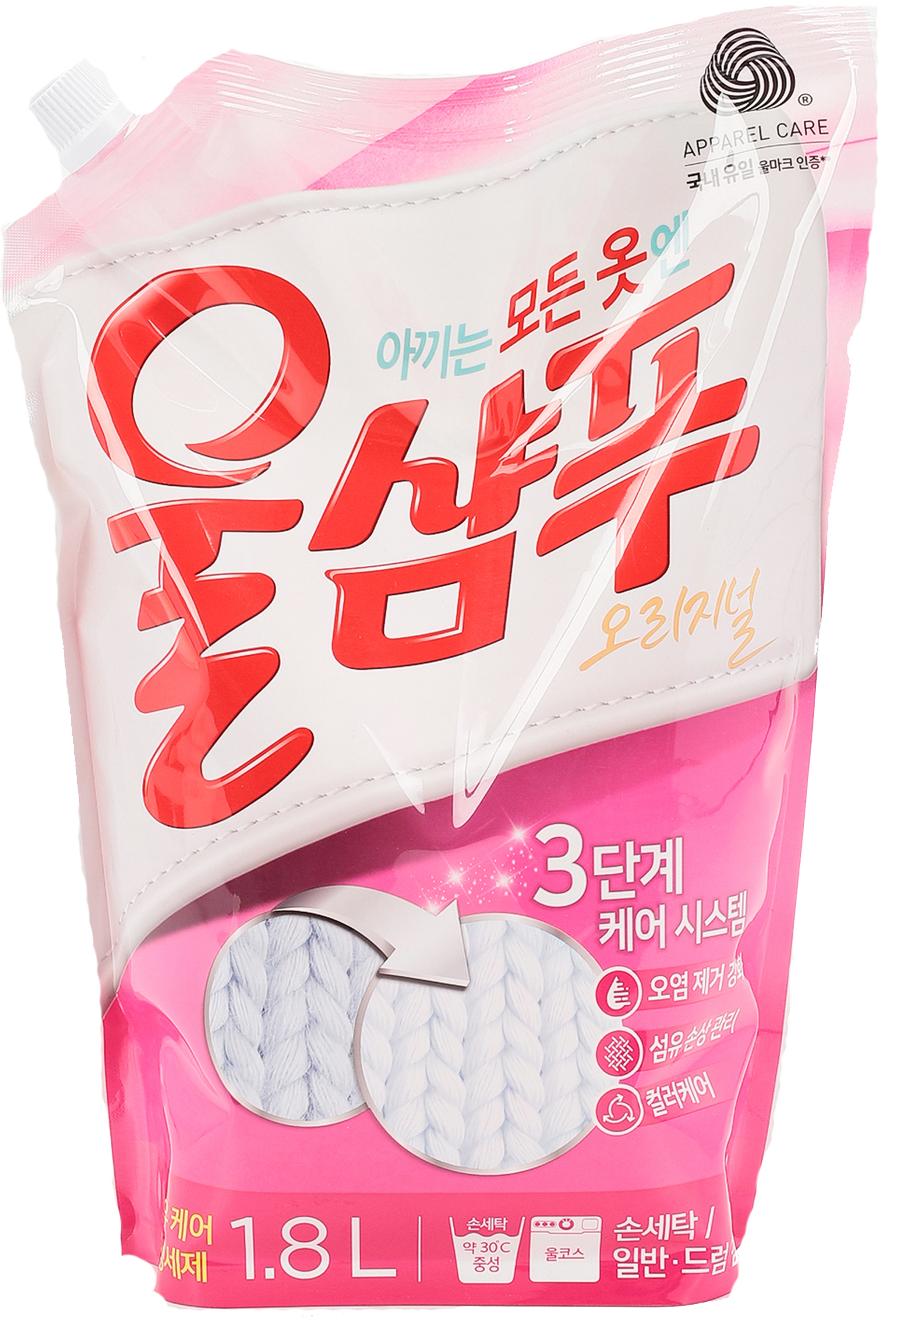 Aekyung Wool Shampoo Original Жидкое средство для стирки деликатных тканей Вул шампу 1.8 л в мягкой упаковке